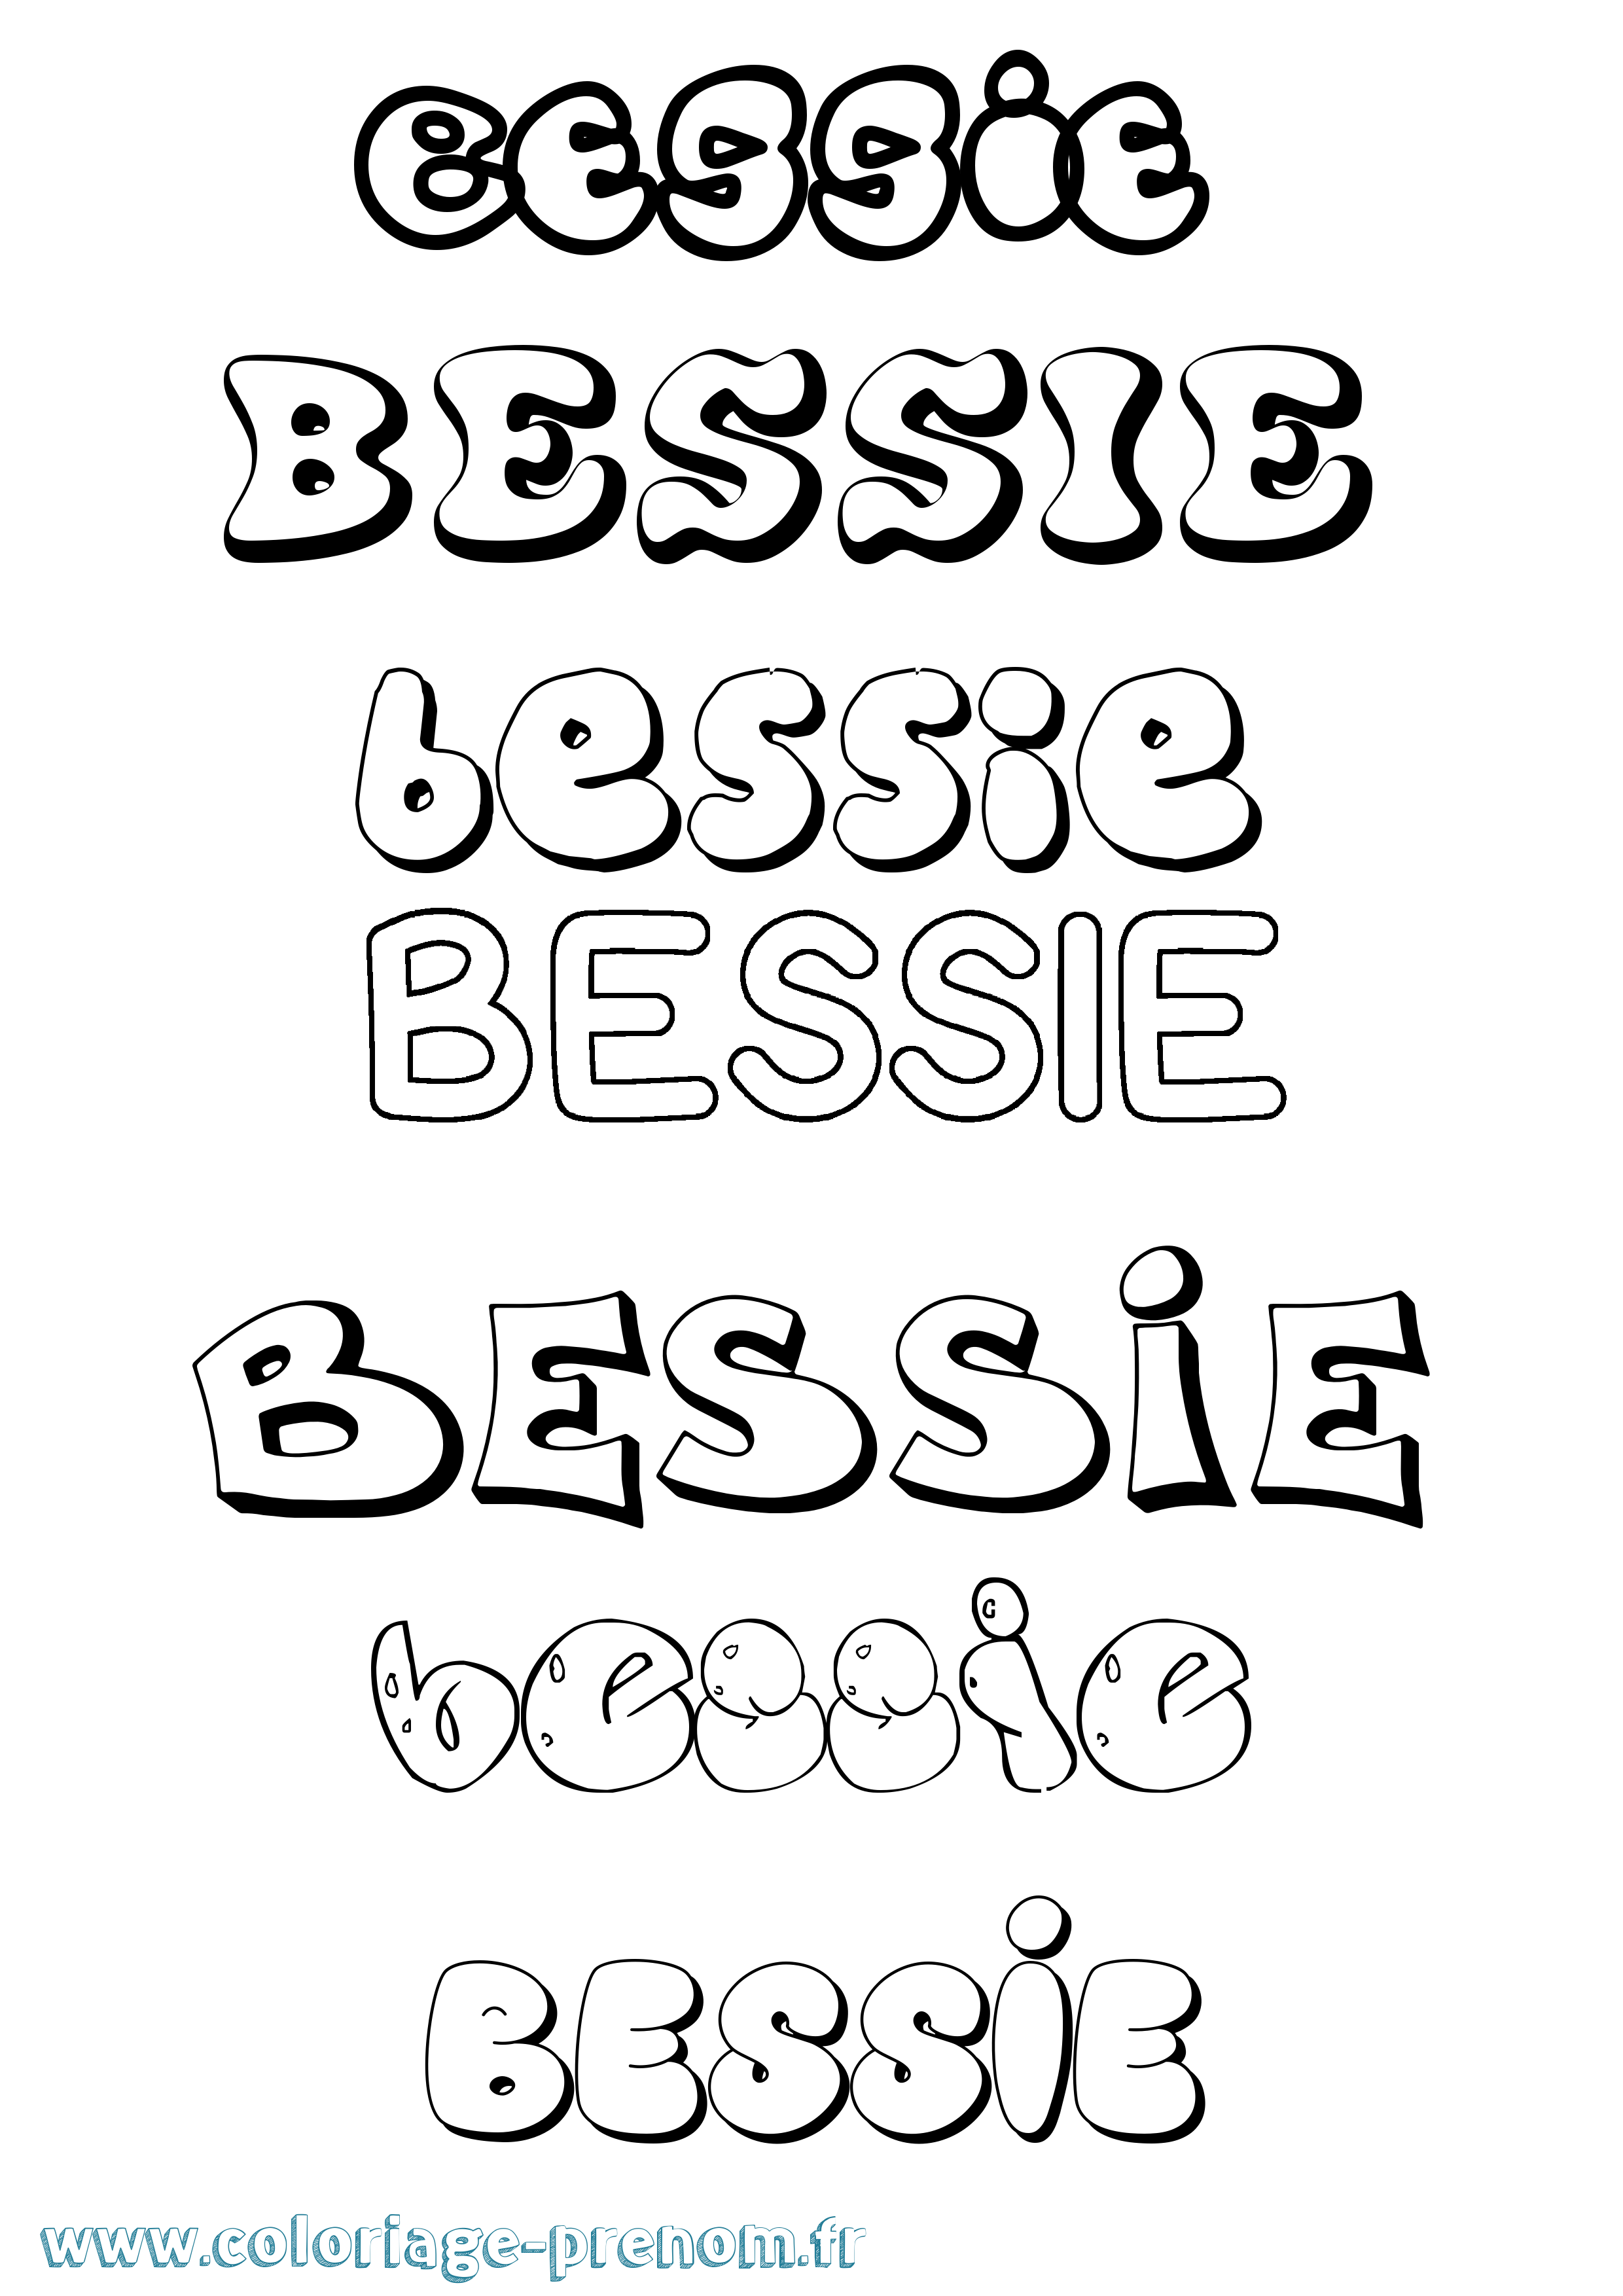 Coloriage prénom Bessie Bubble